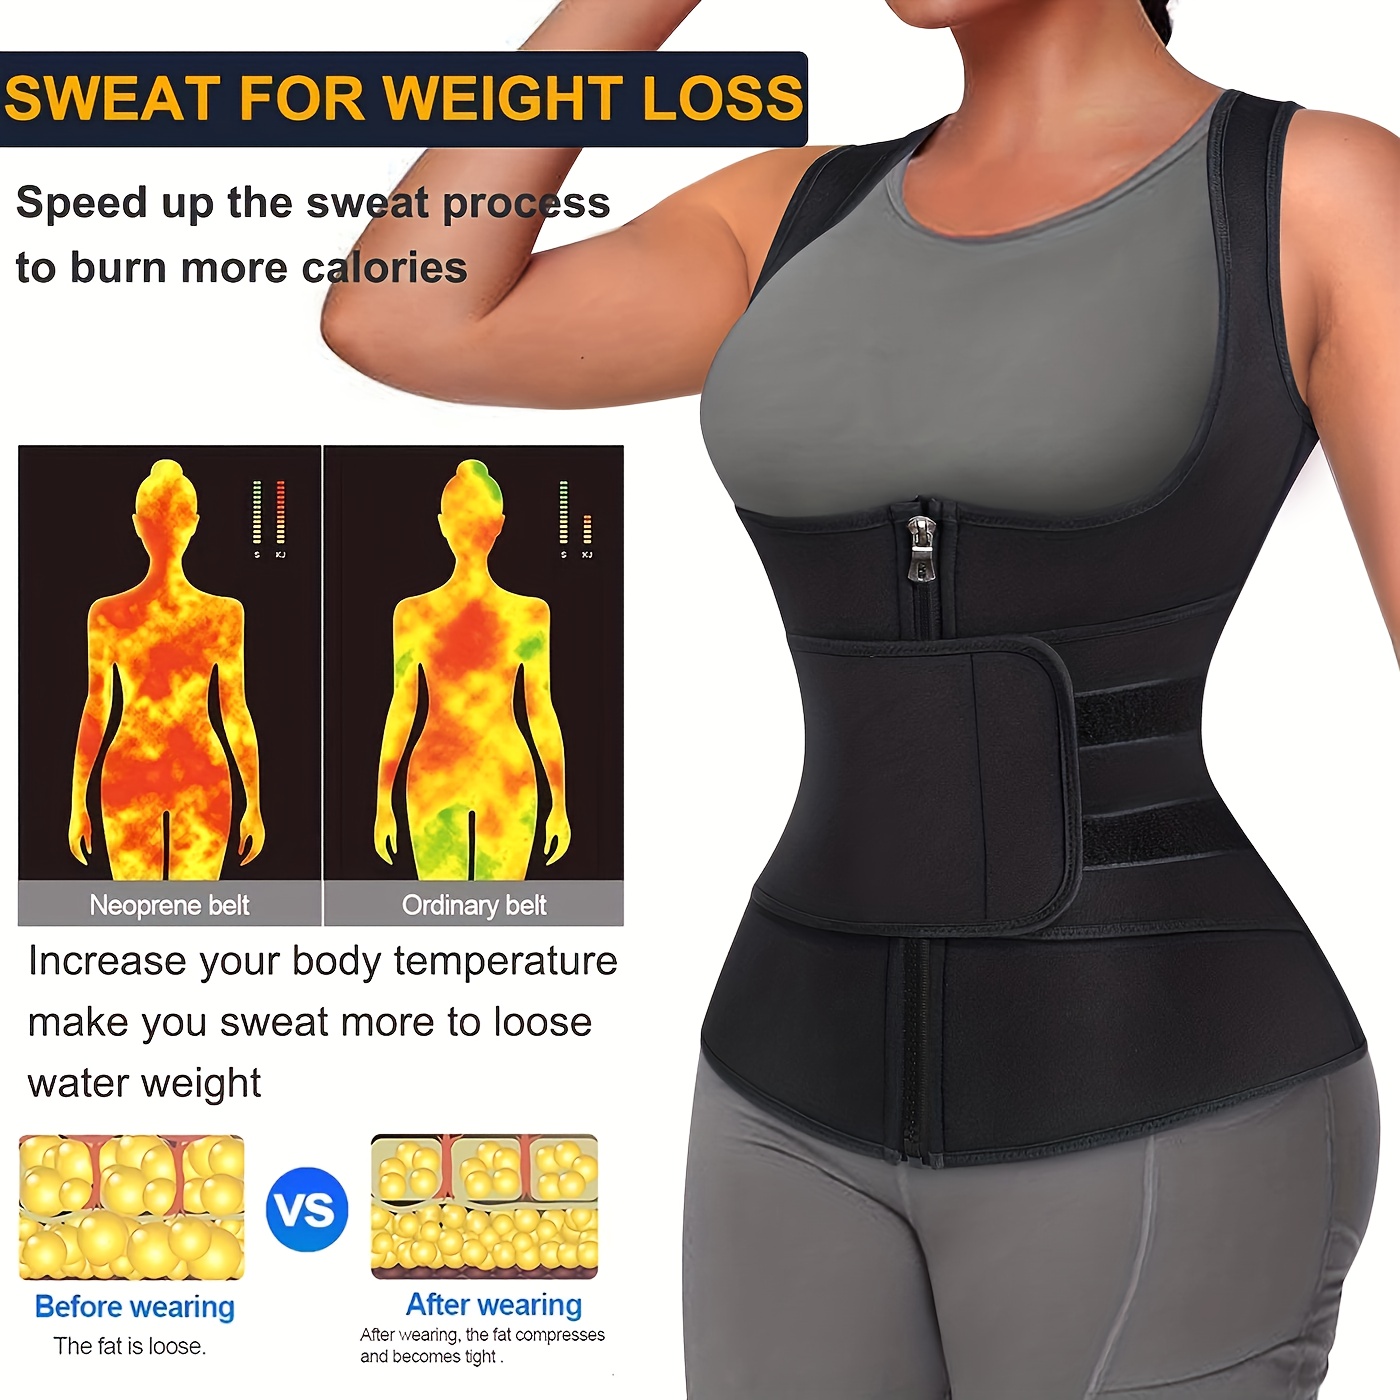 Neoprene Women's Sauna Suit, Weight Loss